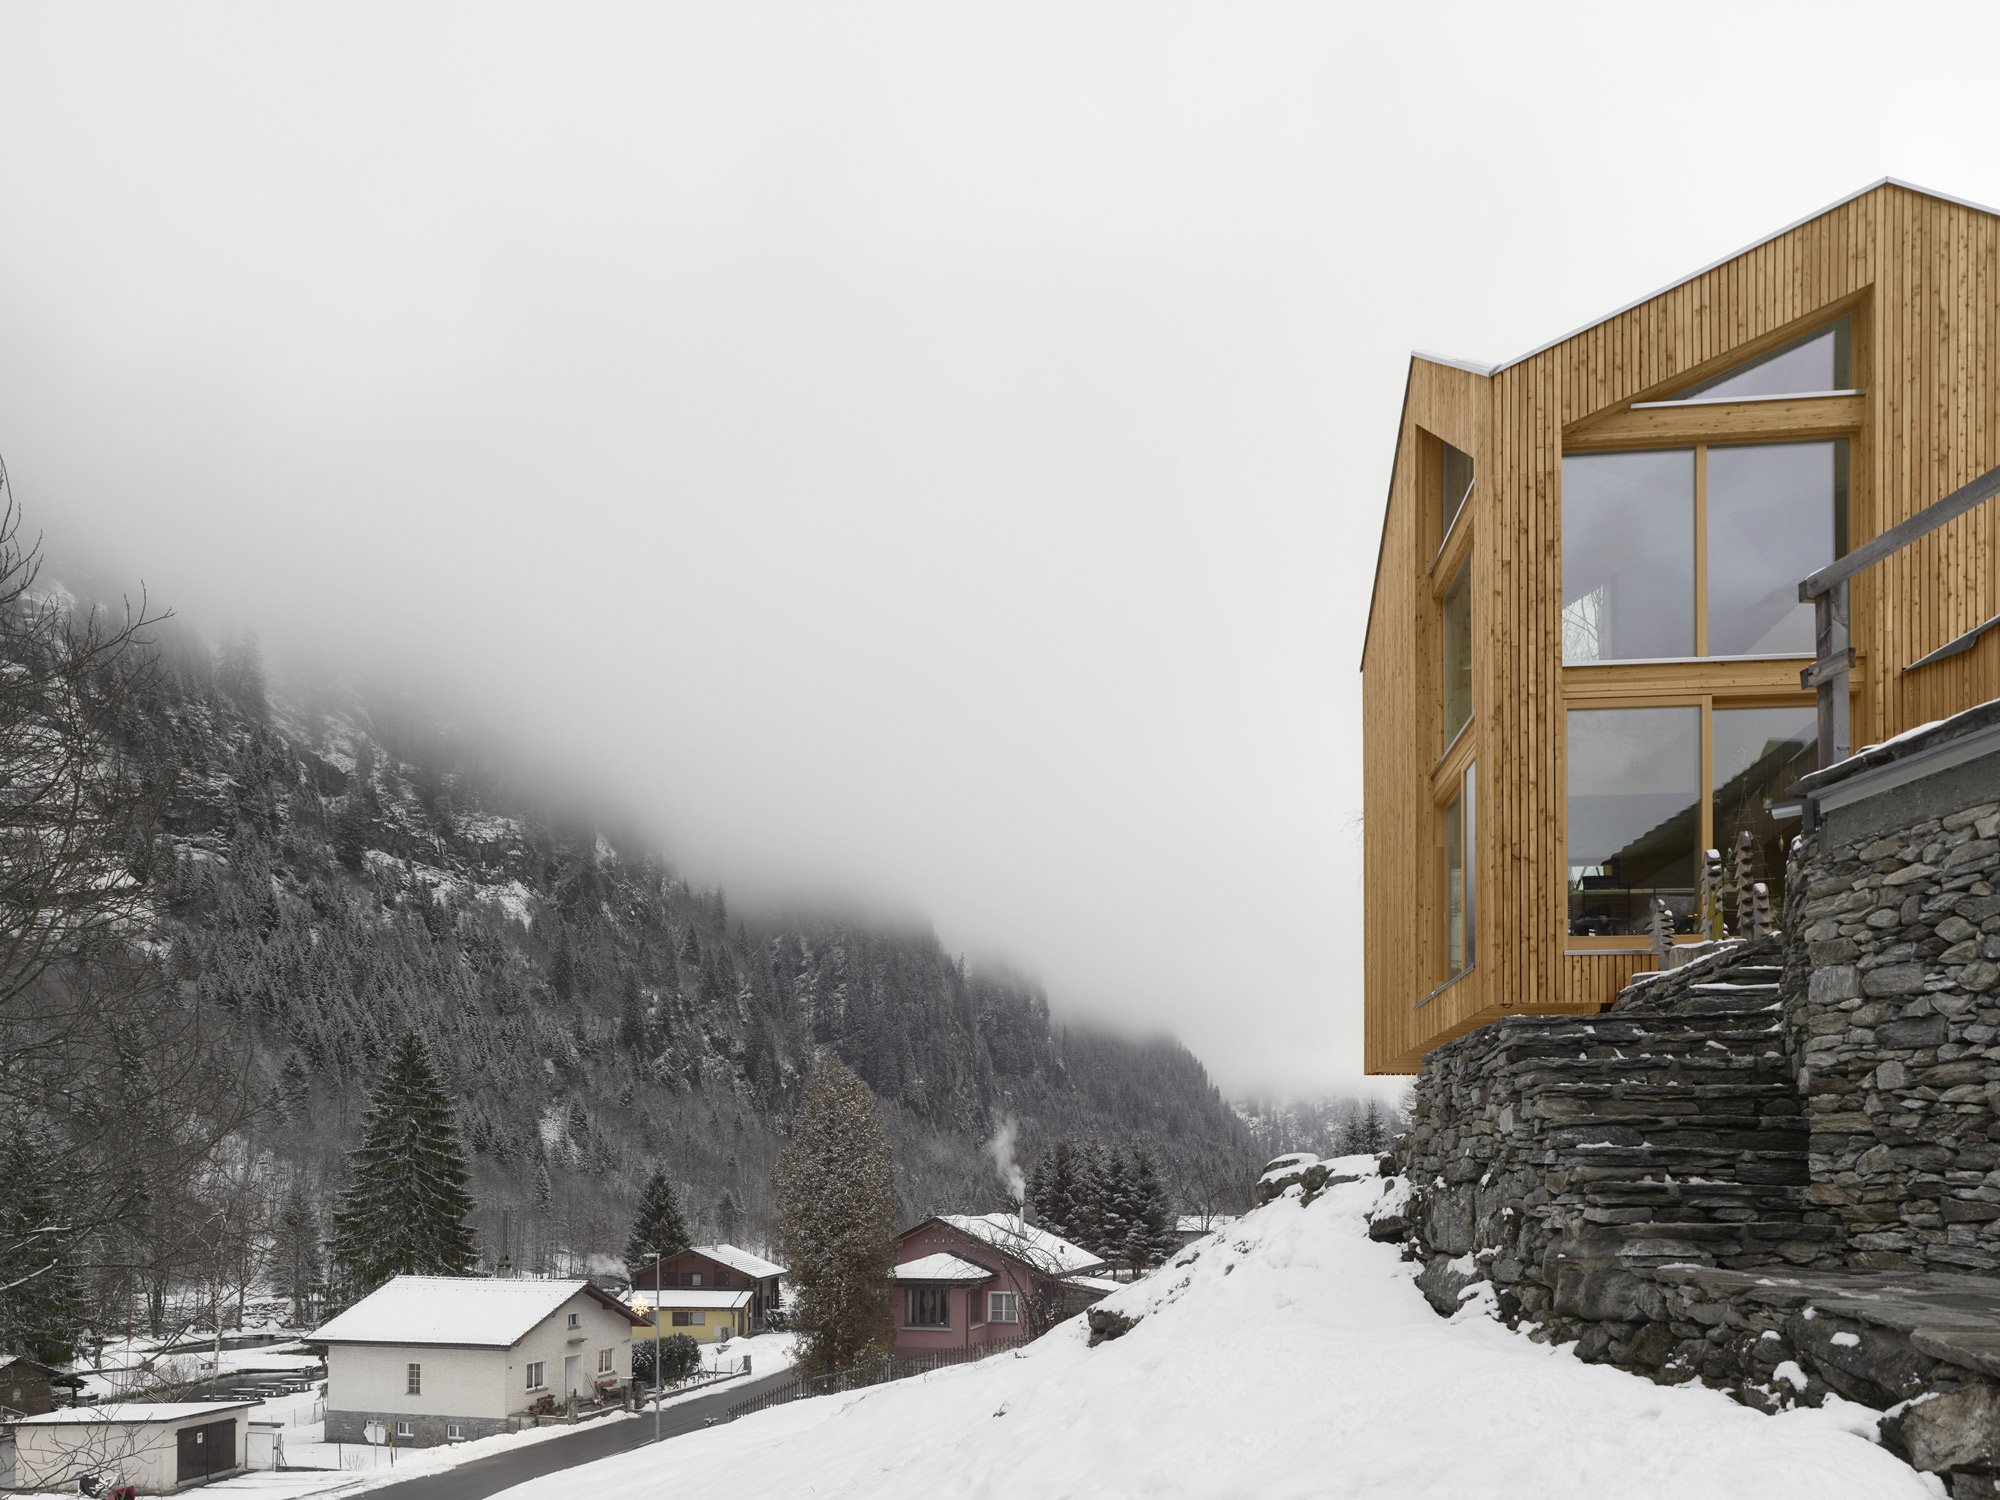 SWISSHOUSE XXXV, una tiny house di legno sulle alpi svizzere